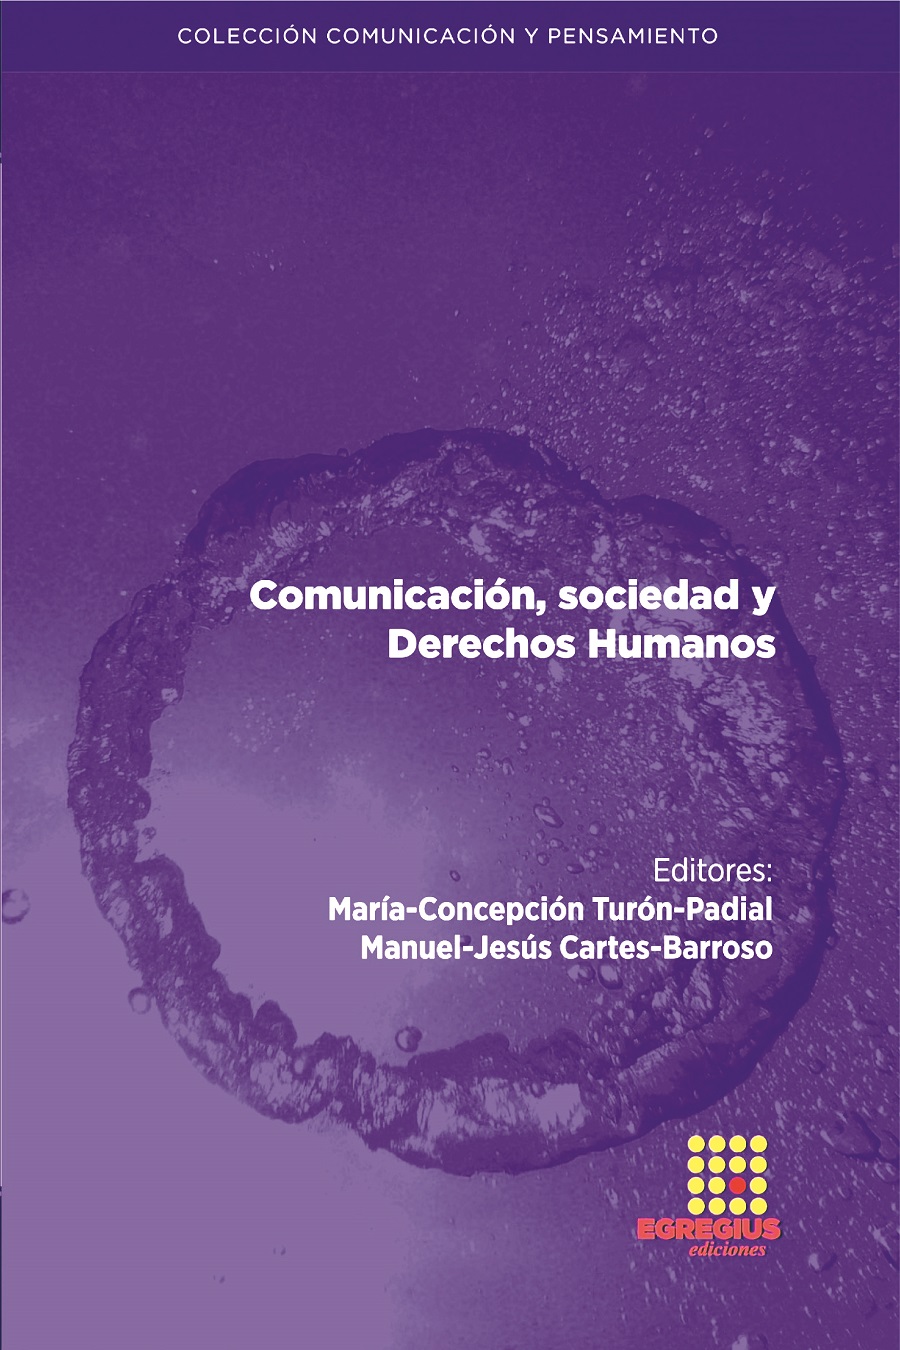 "Comunicación, sociedad y Derechos Humanos"